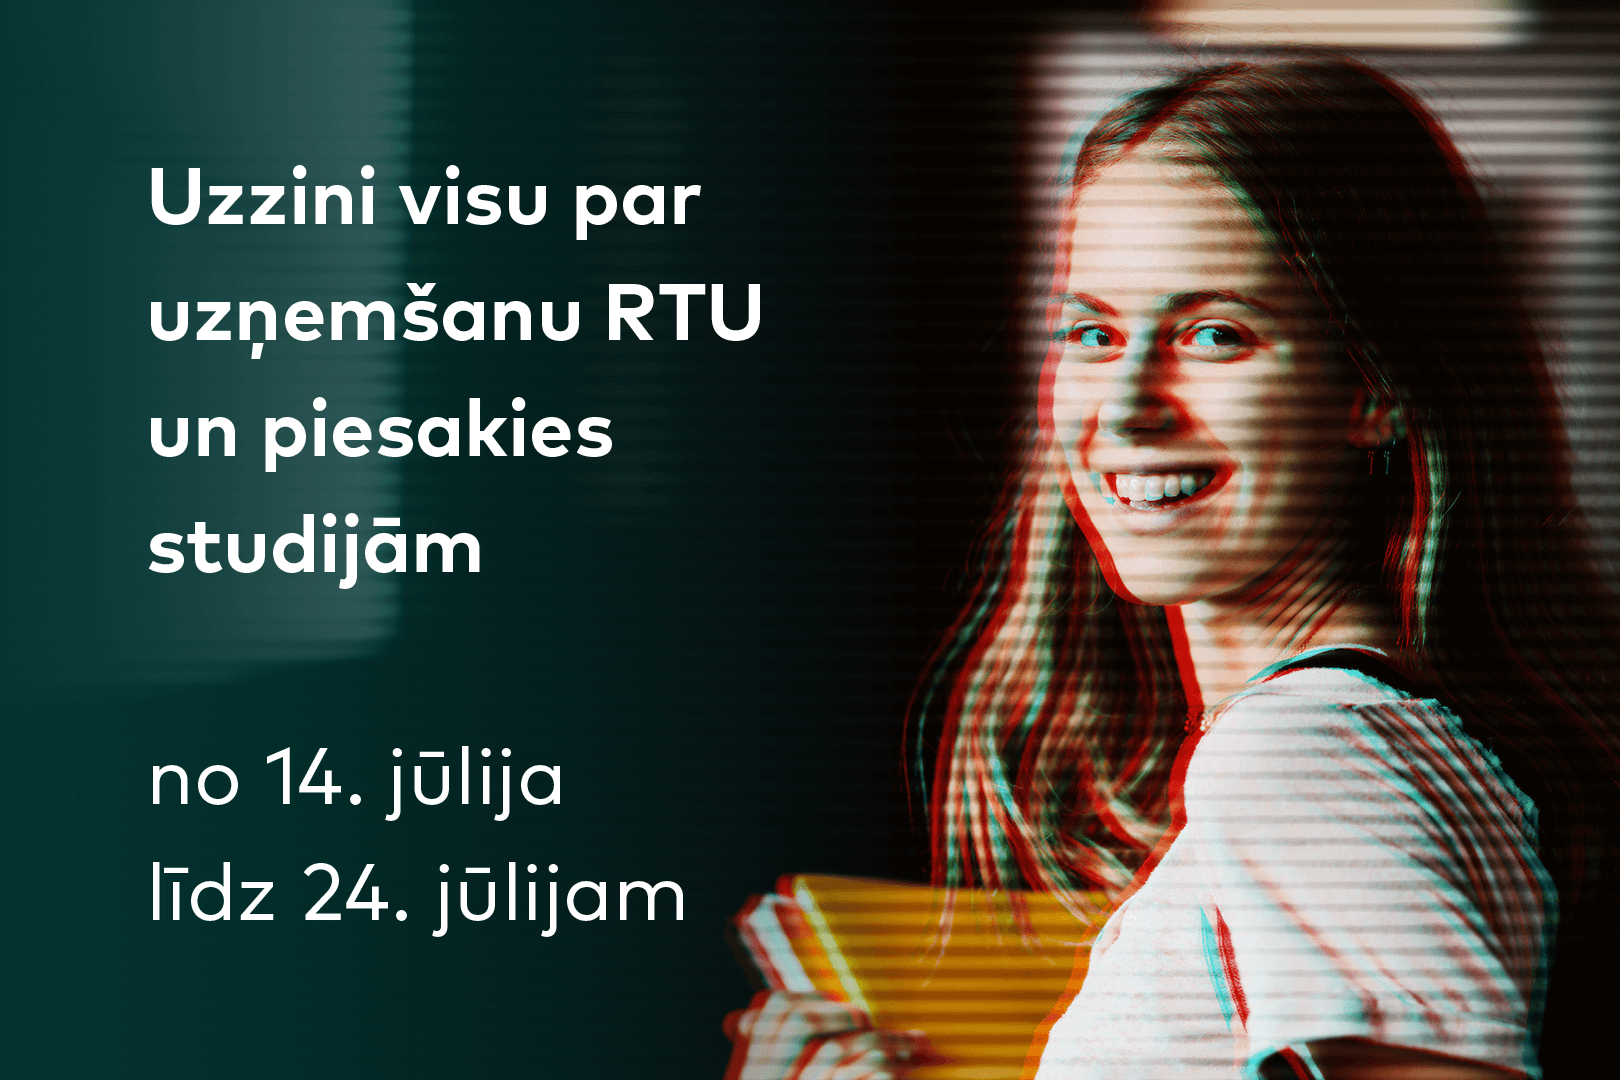 Jauno studentu uzņemšana RTU sāksies 14. jūlijā